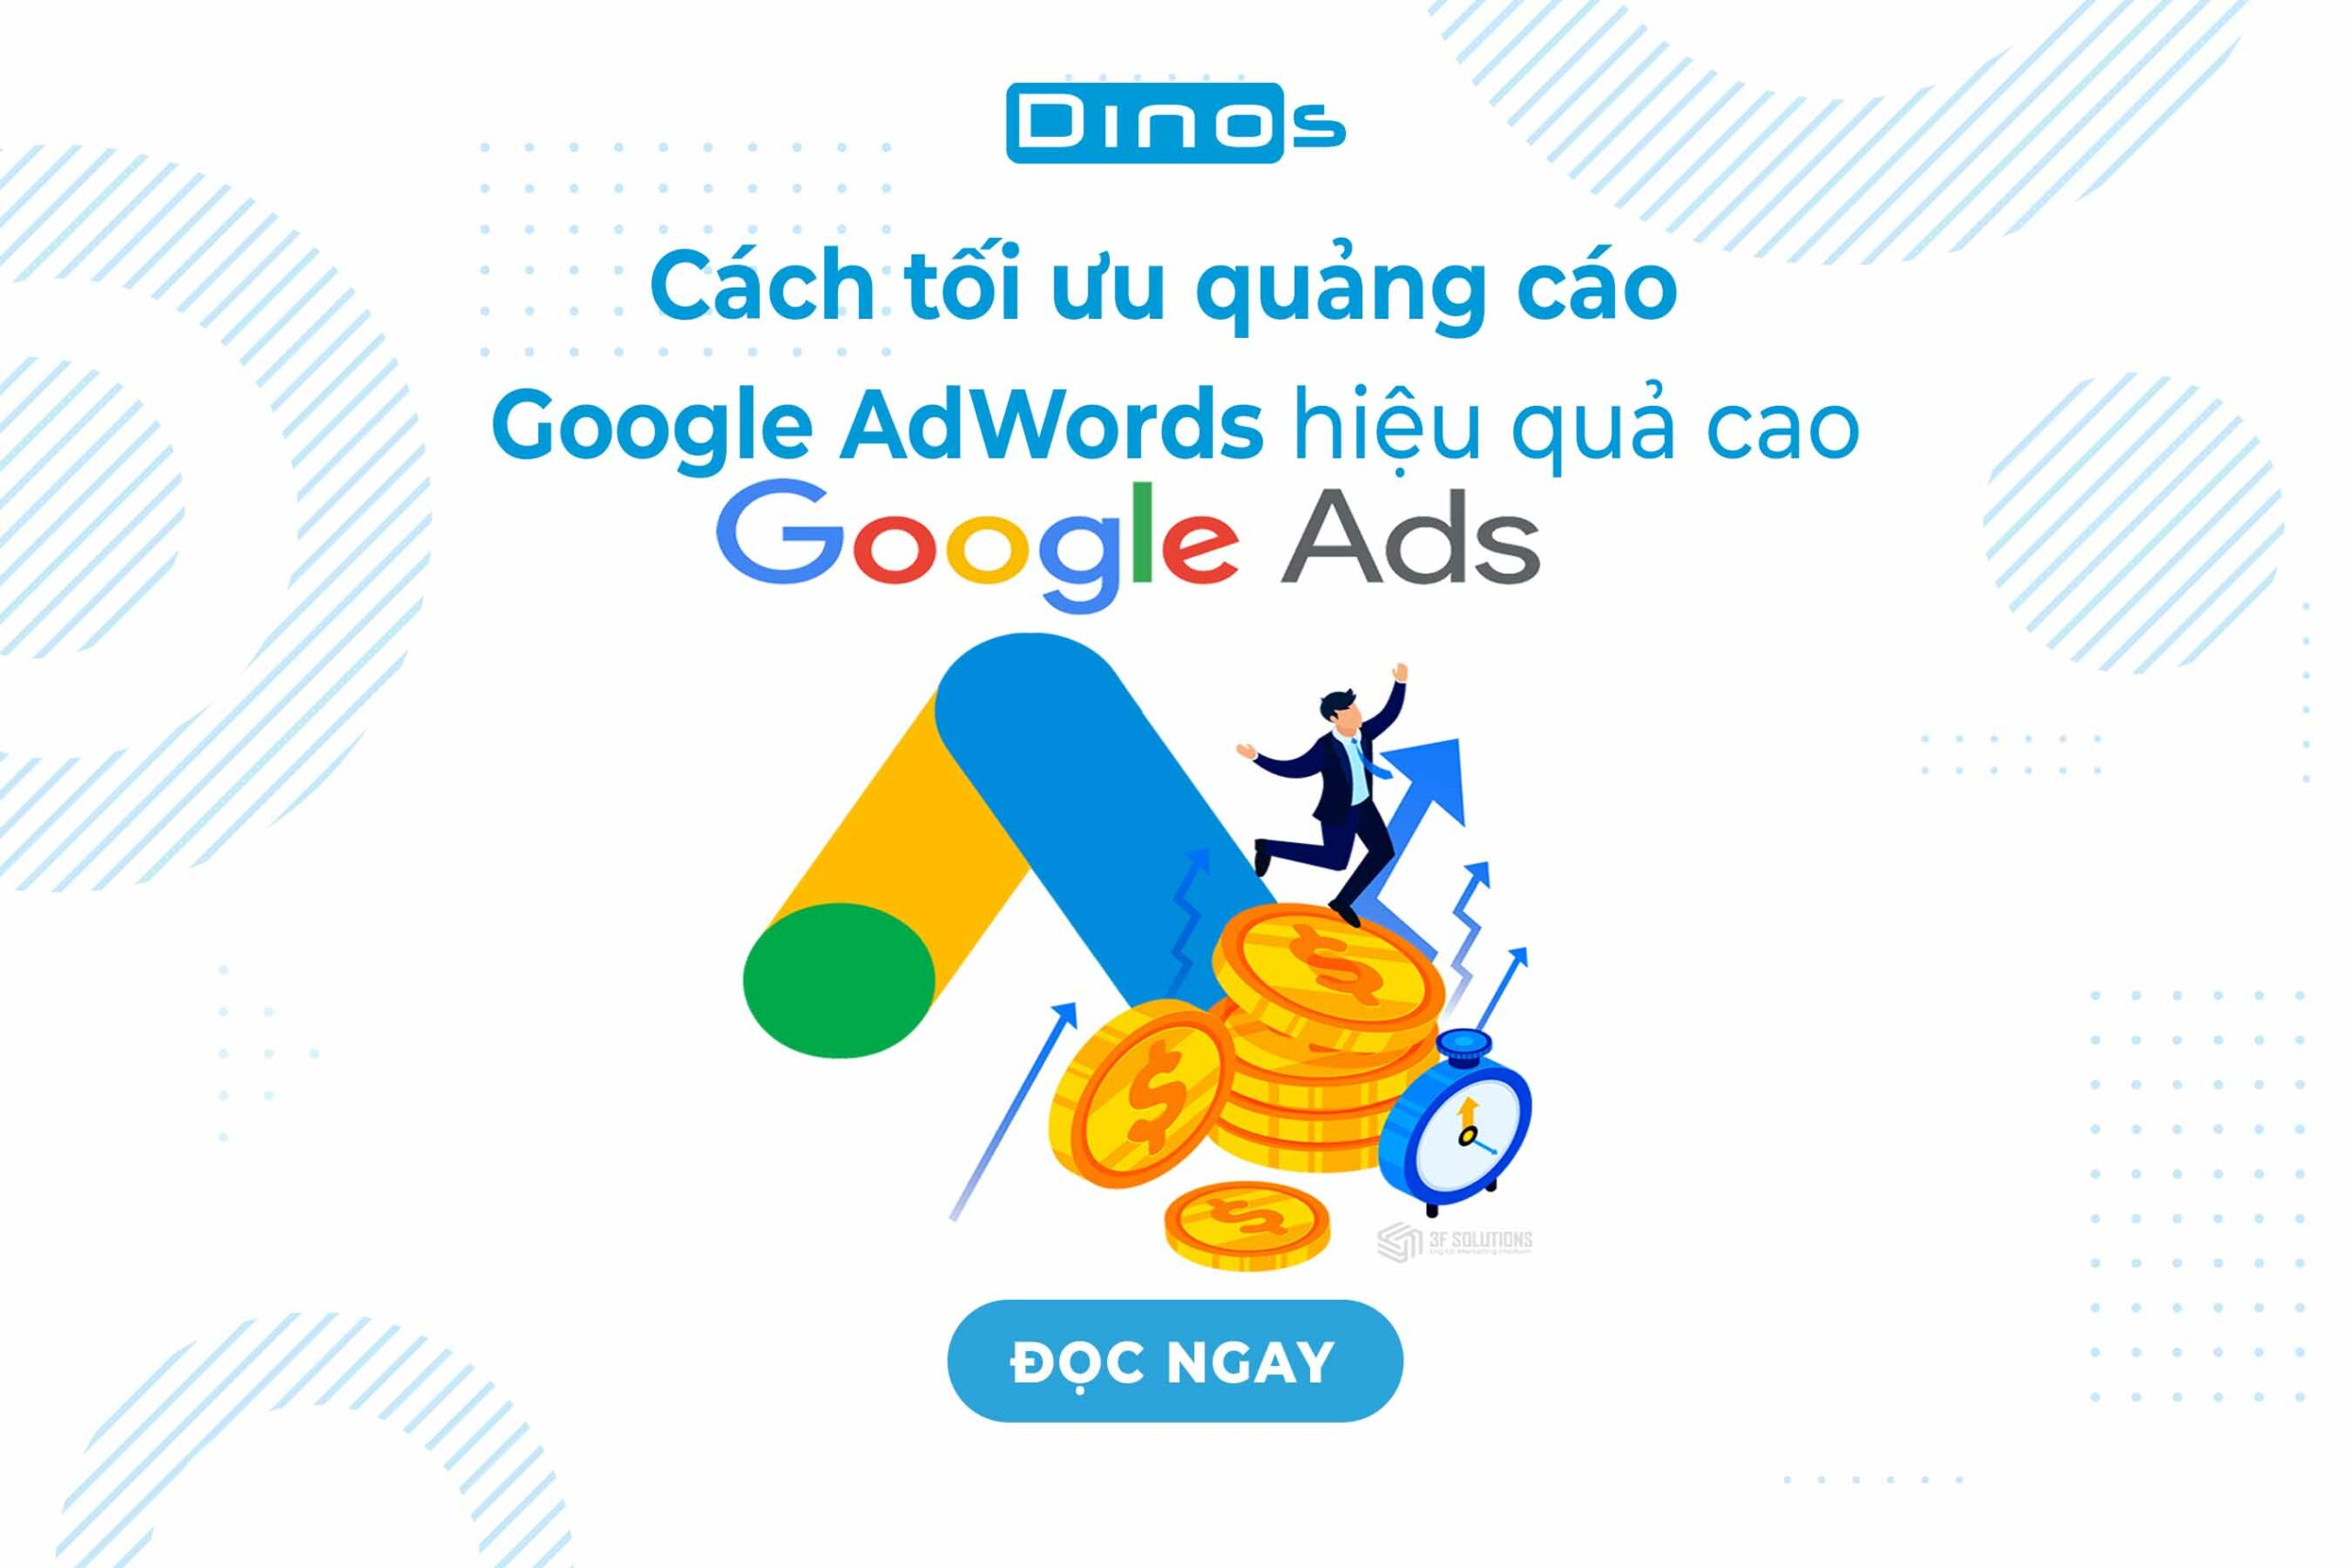 Cach-toi-uu-quang-cao-google-ads